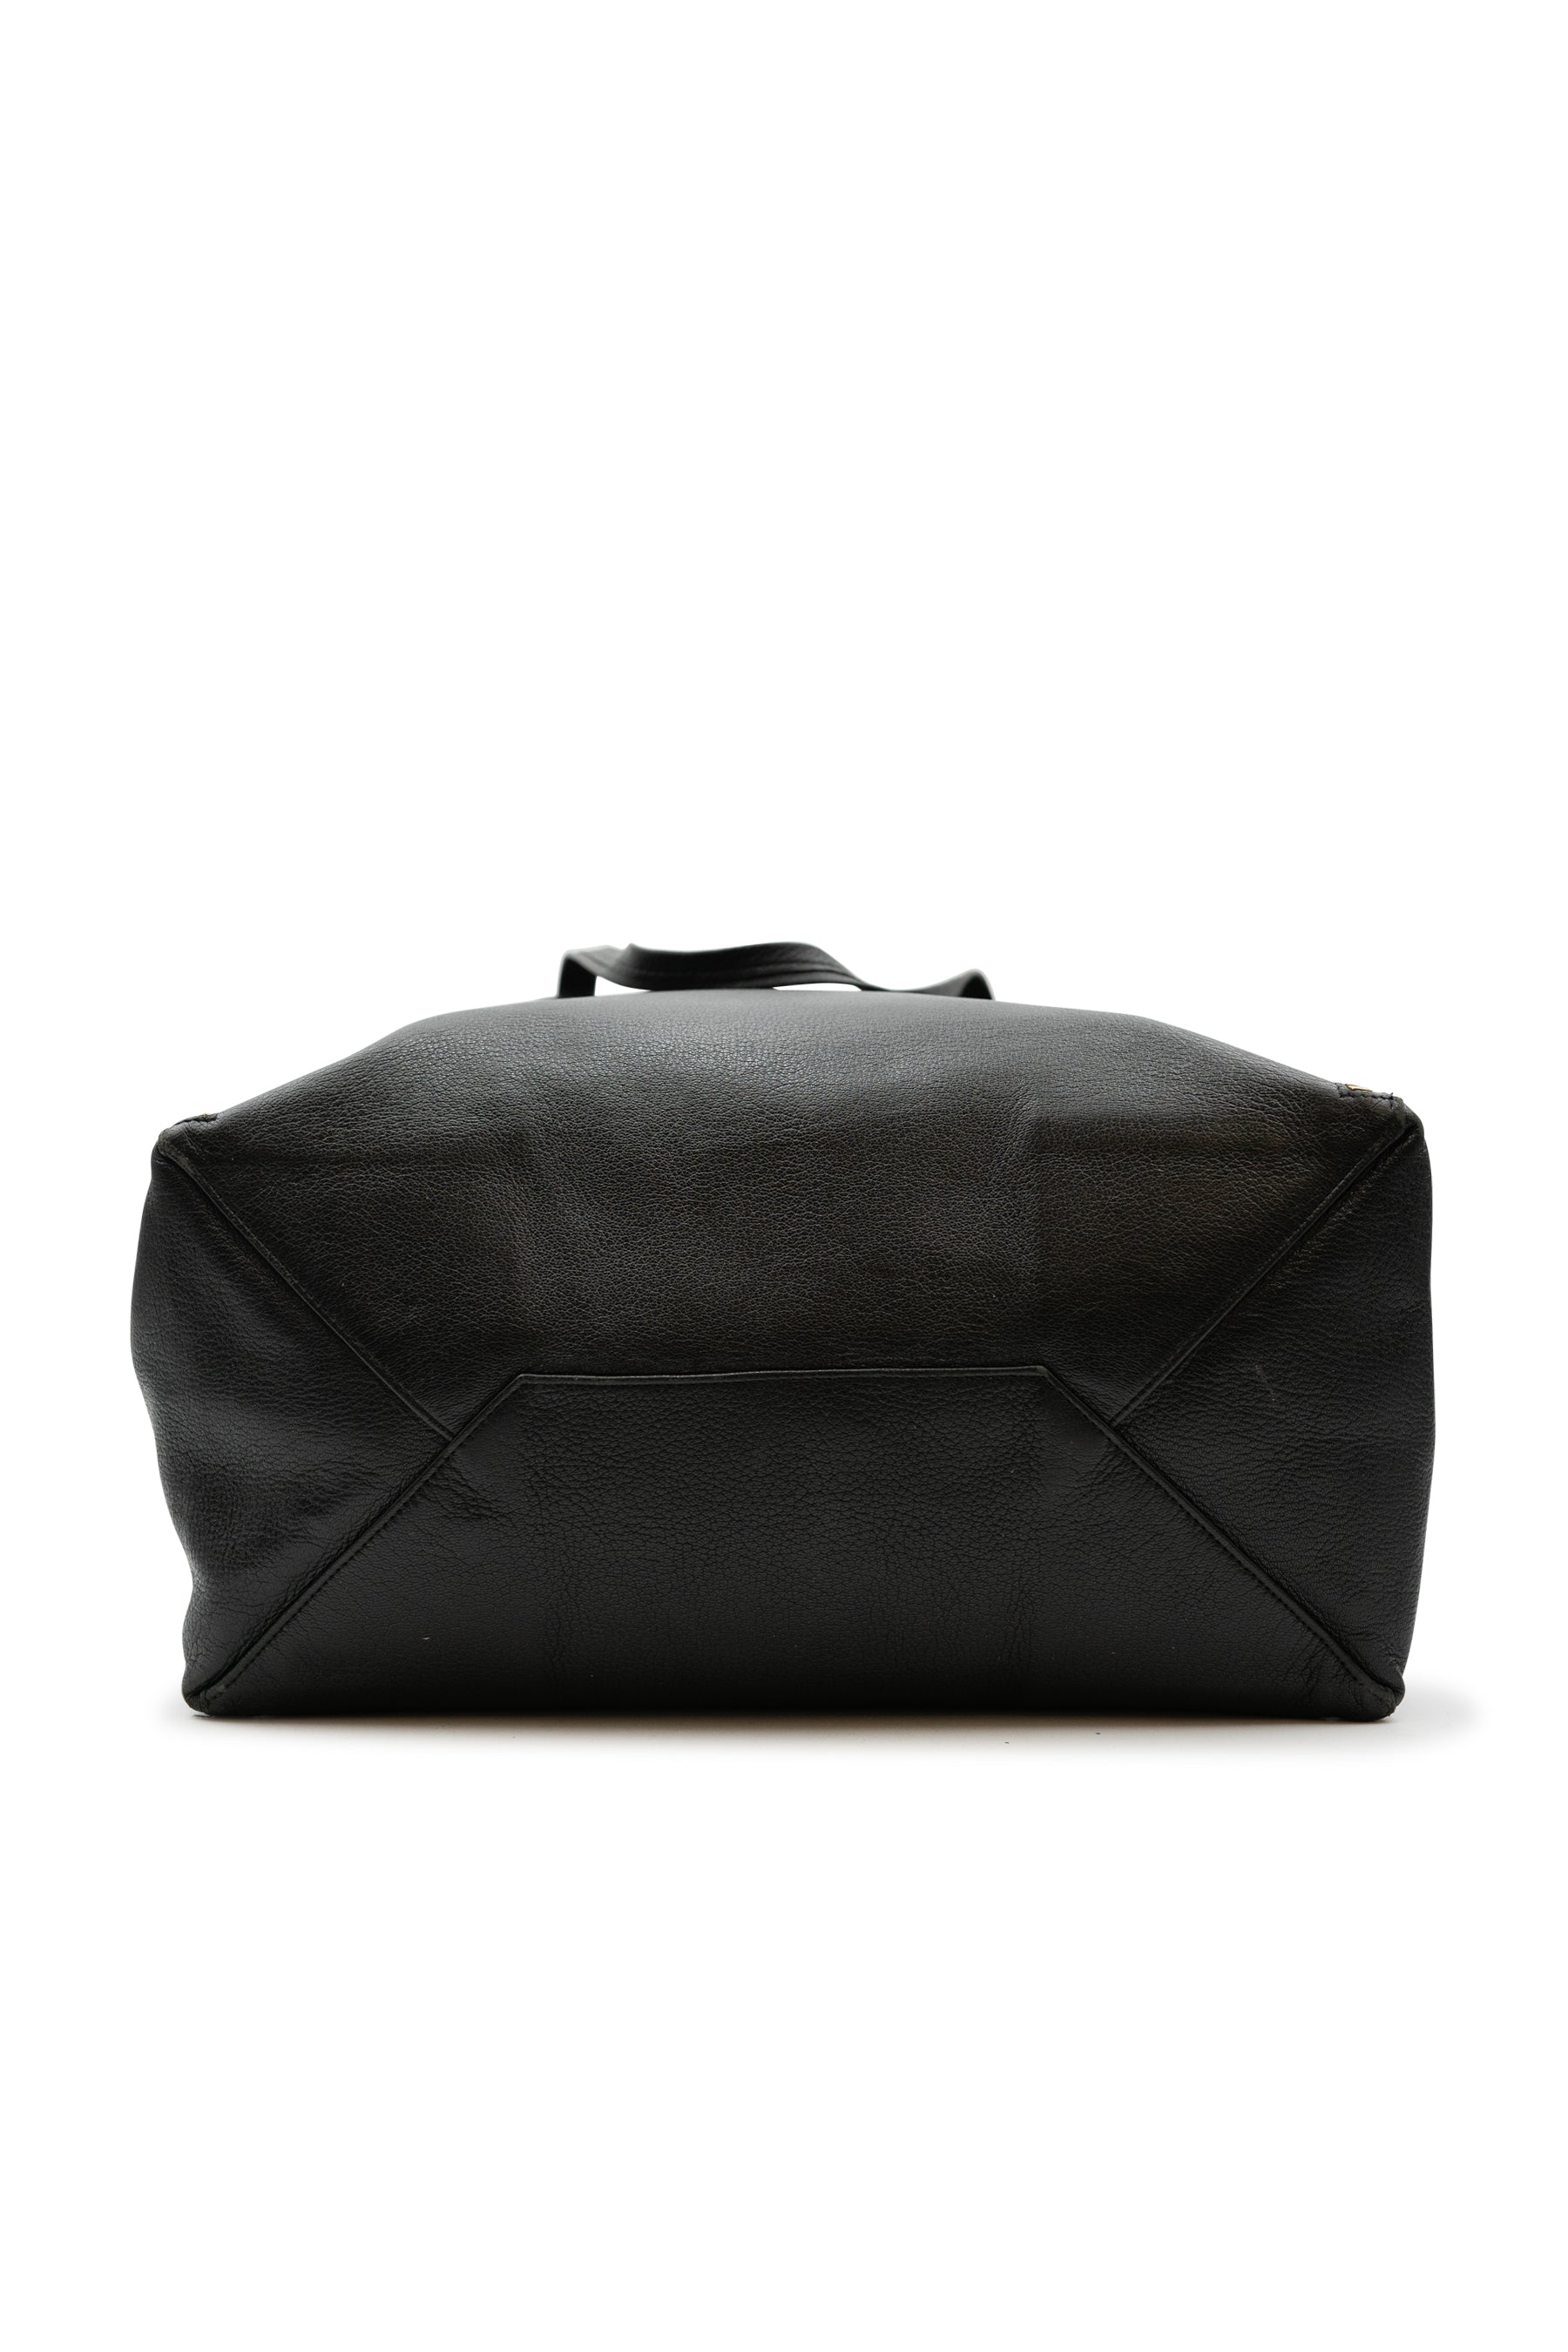 CELINE 190062 Horizontal Cabas Logo Tote Bag Shoulder Bag Canvas/Leather  Beige